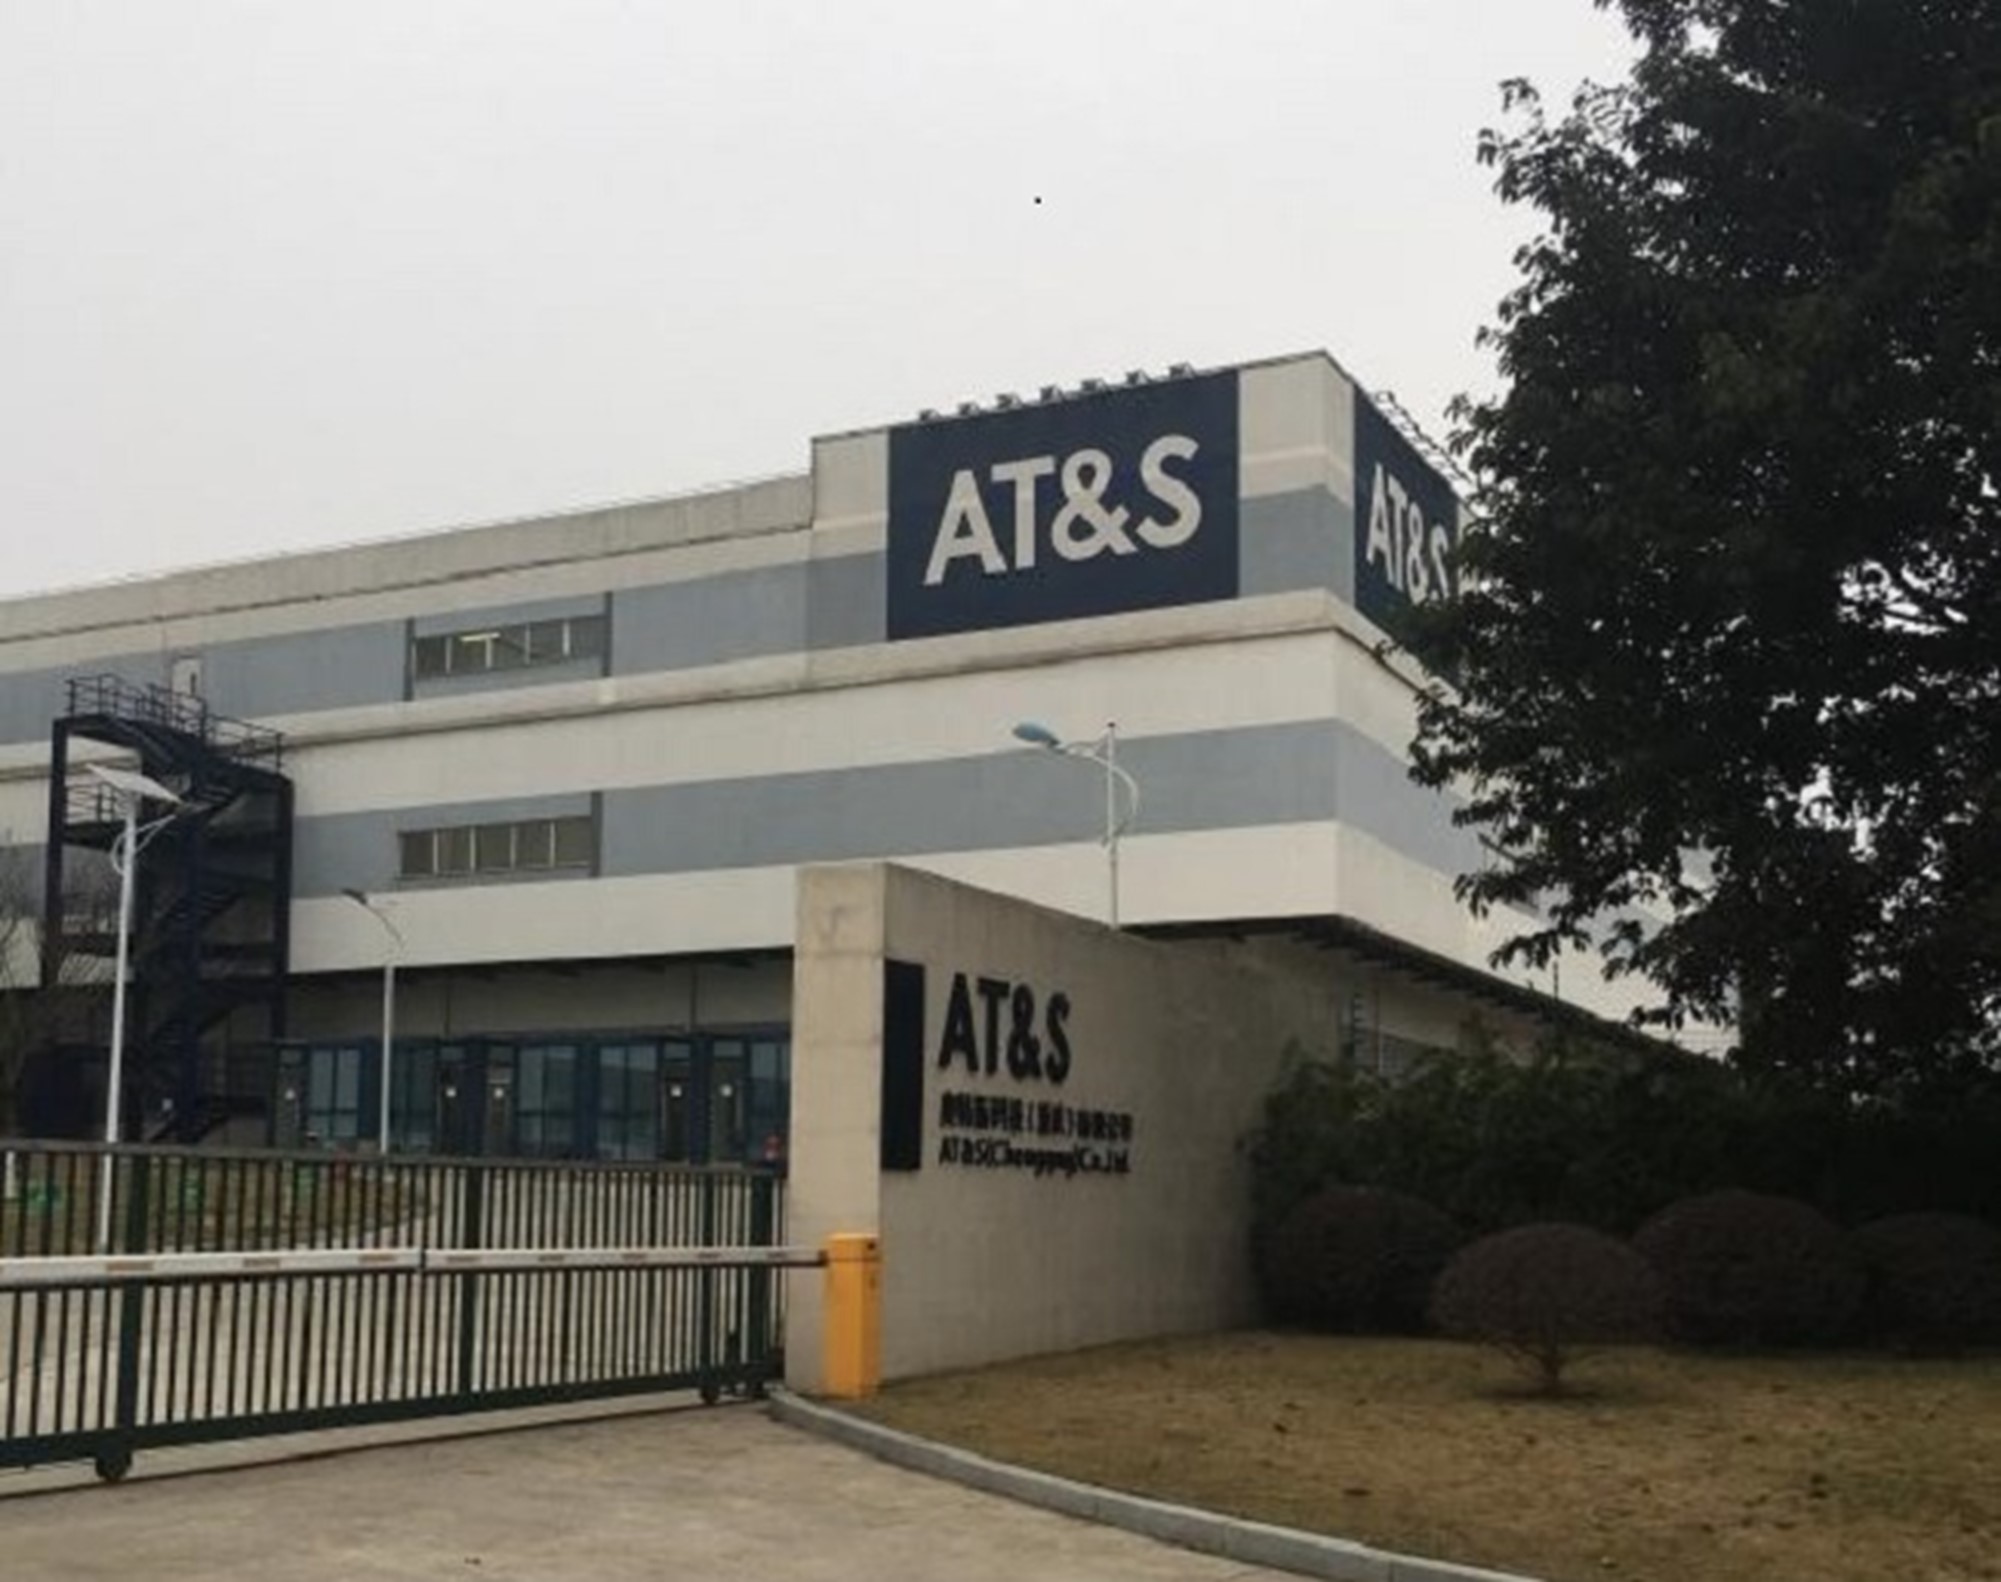  AT&S 奥地利科技